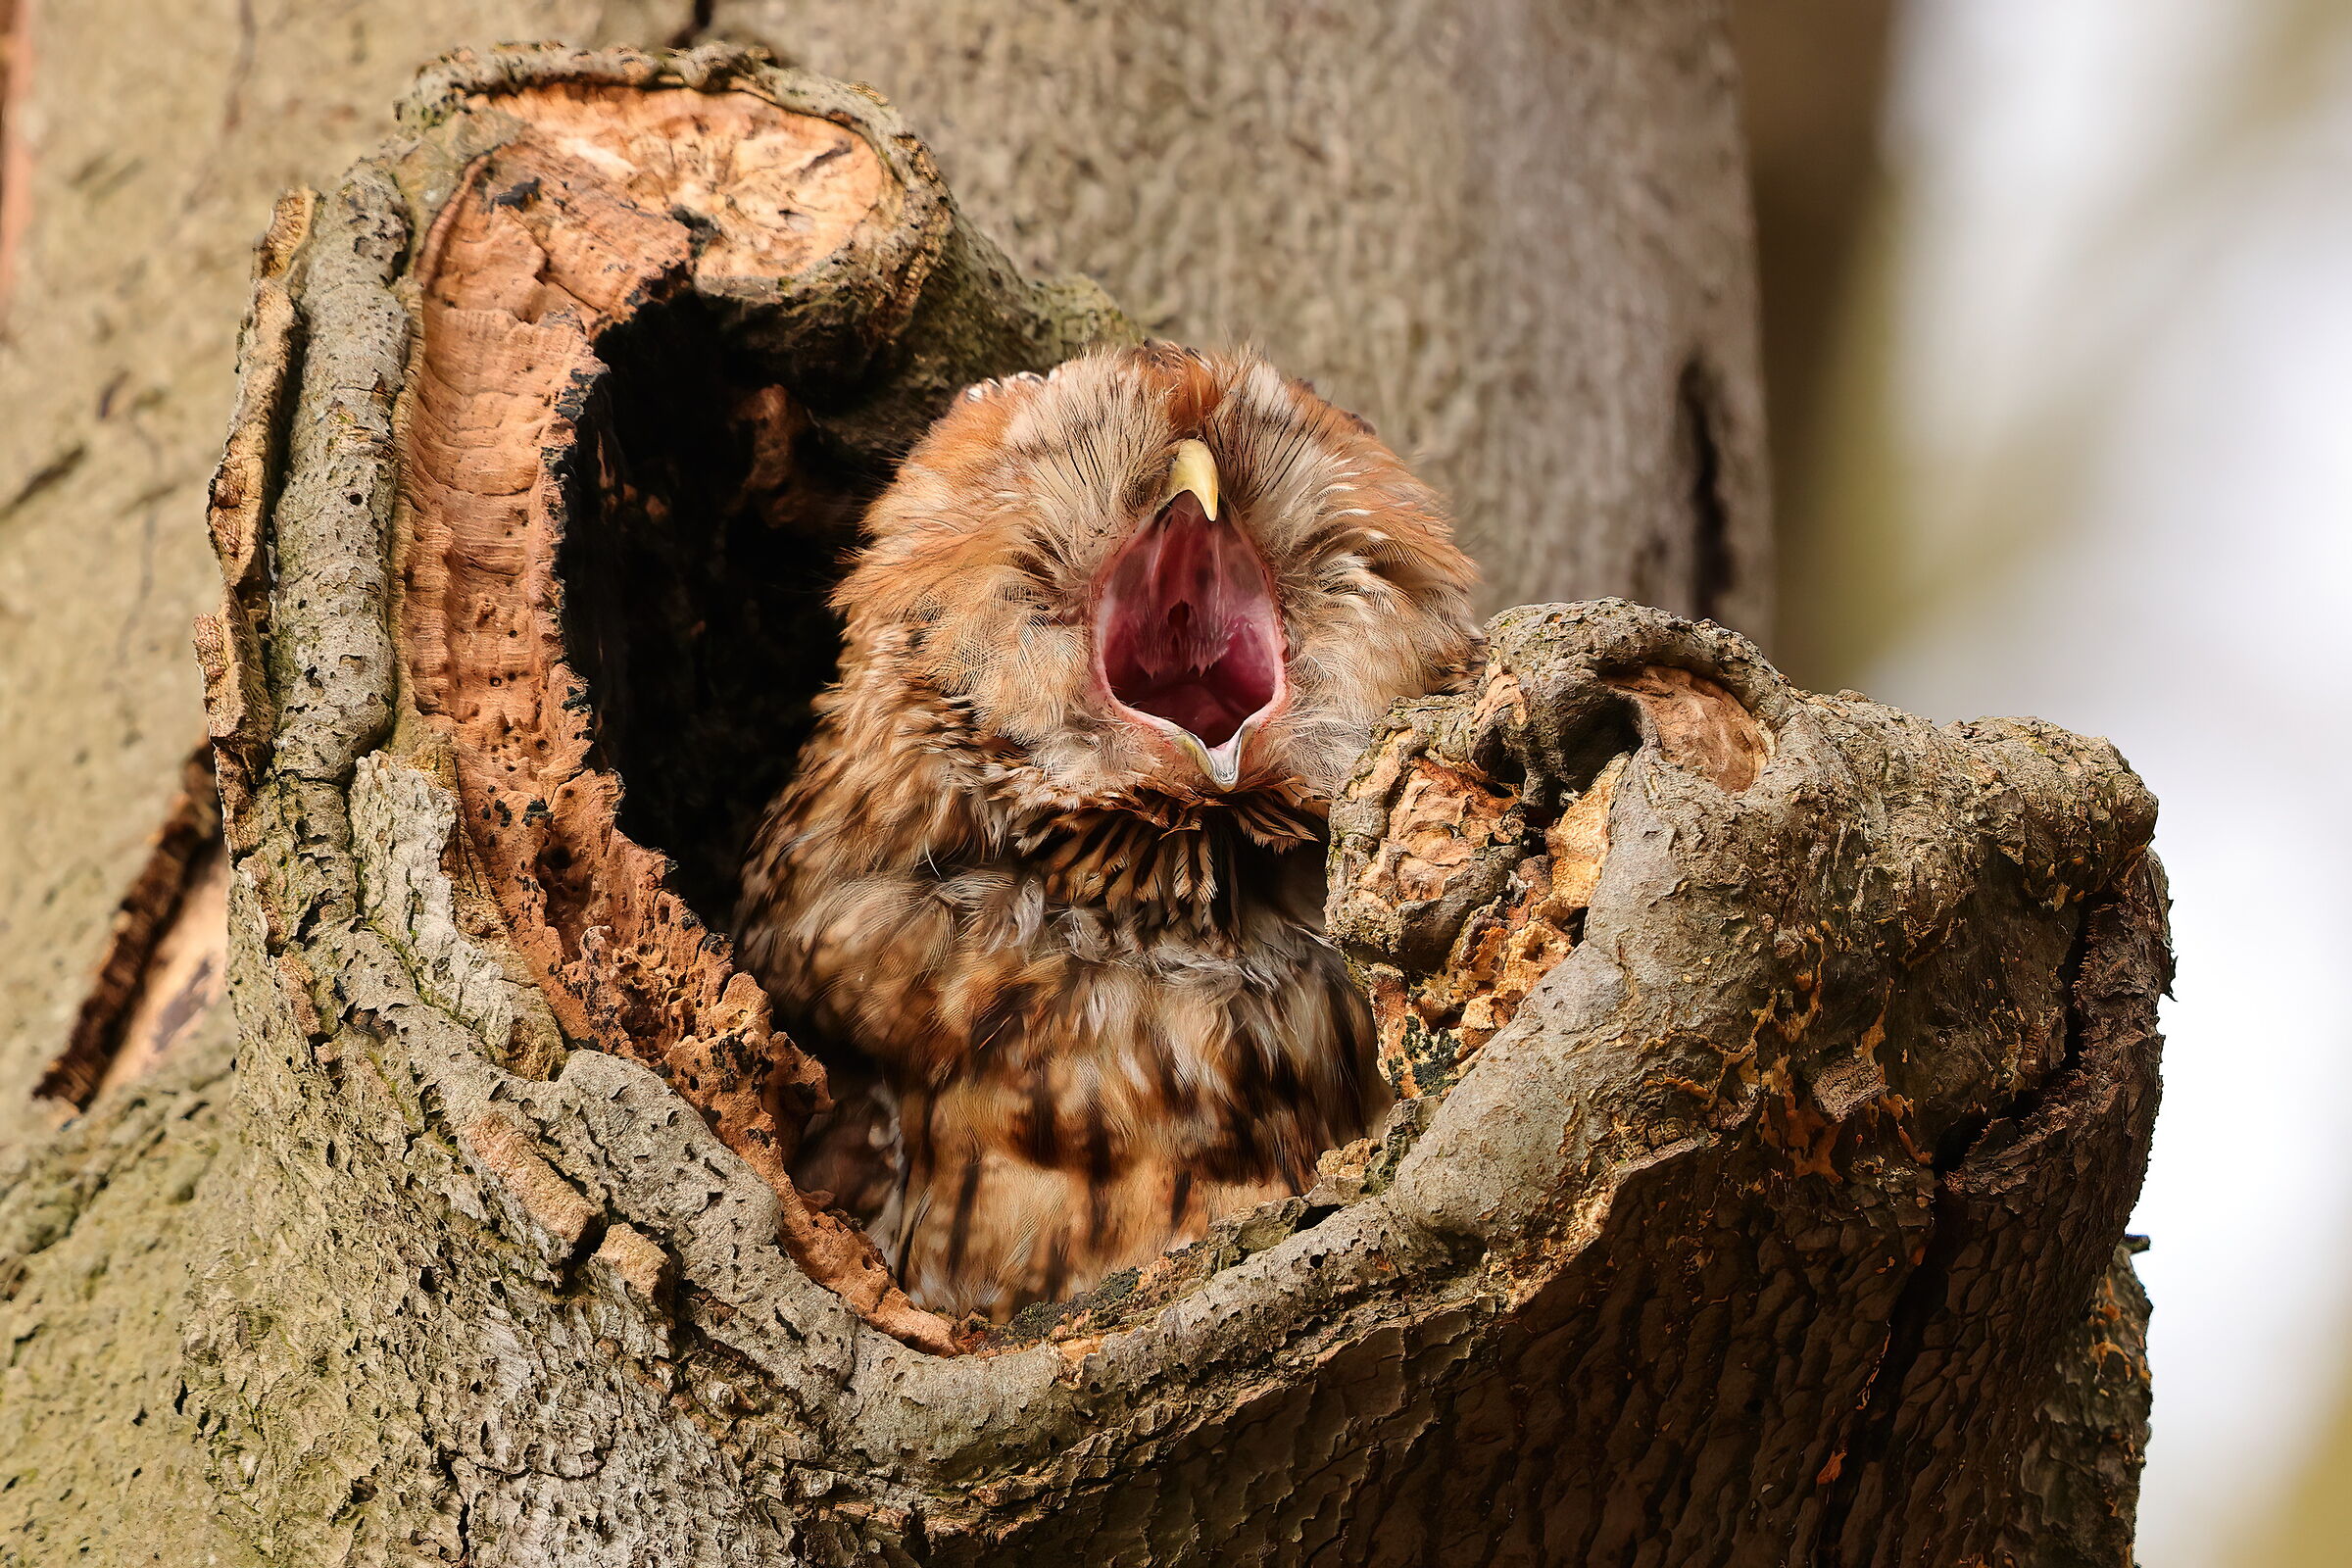 The yawn owl...